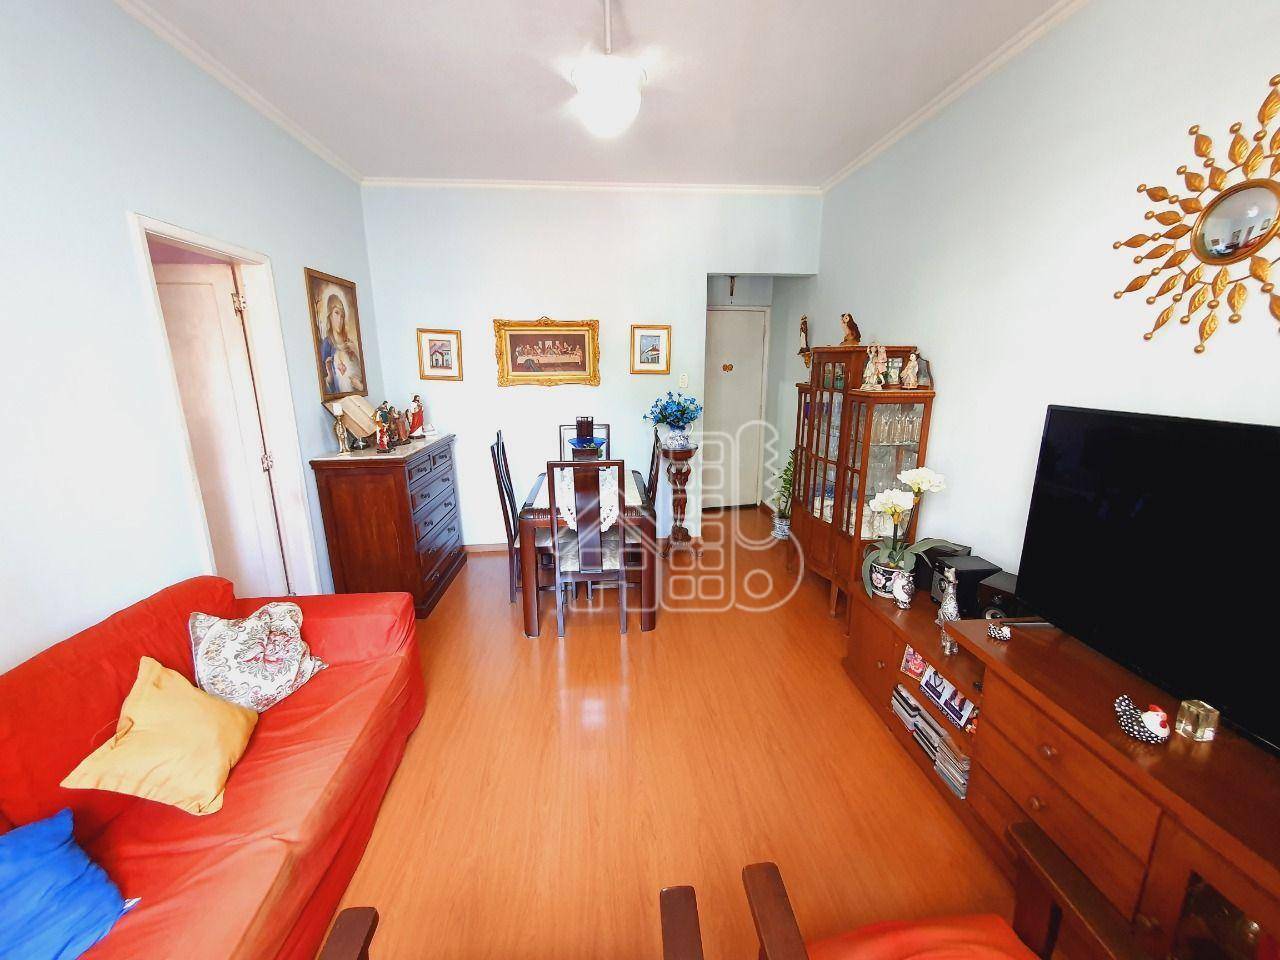 Apartamento com 1 dormitório à venda, 55 m² por R$ 430.000 - Icaraí - Niterói/RJ